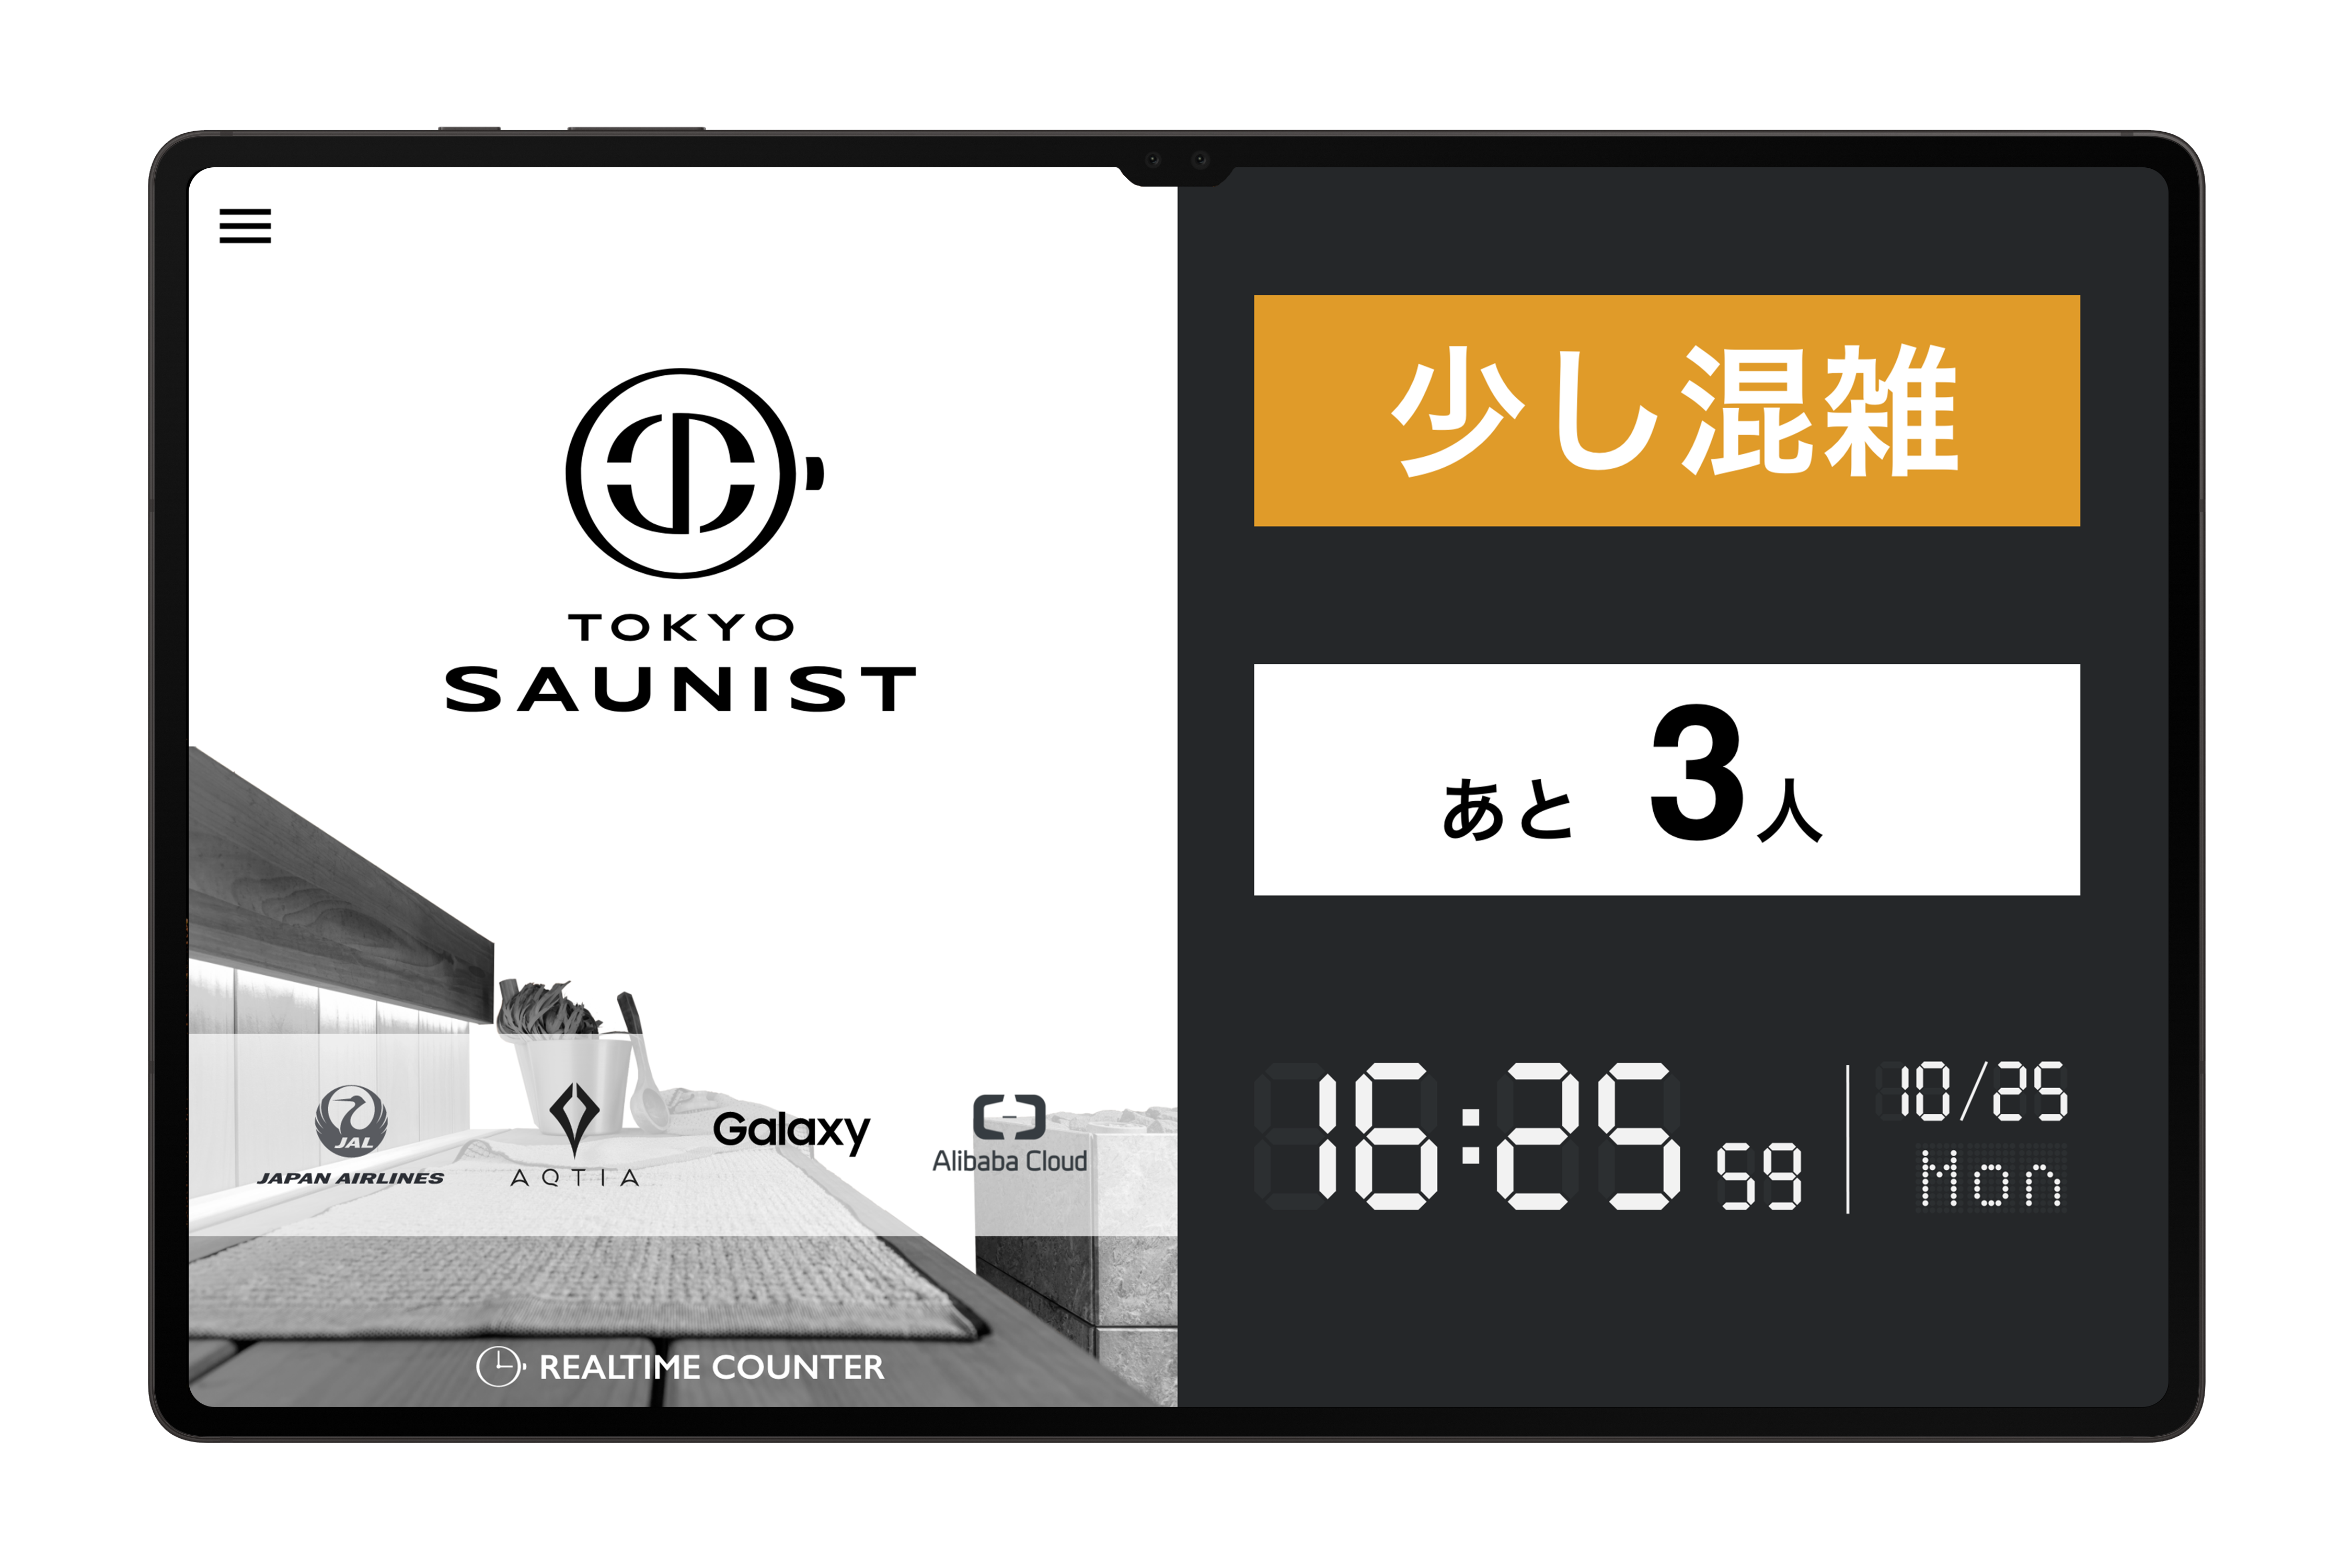 JALとアクティア、混雑センサーでサウナが満室かをアプリで把握できるサービス「TOKYO SAUNIST」をリリース